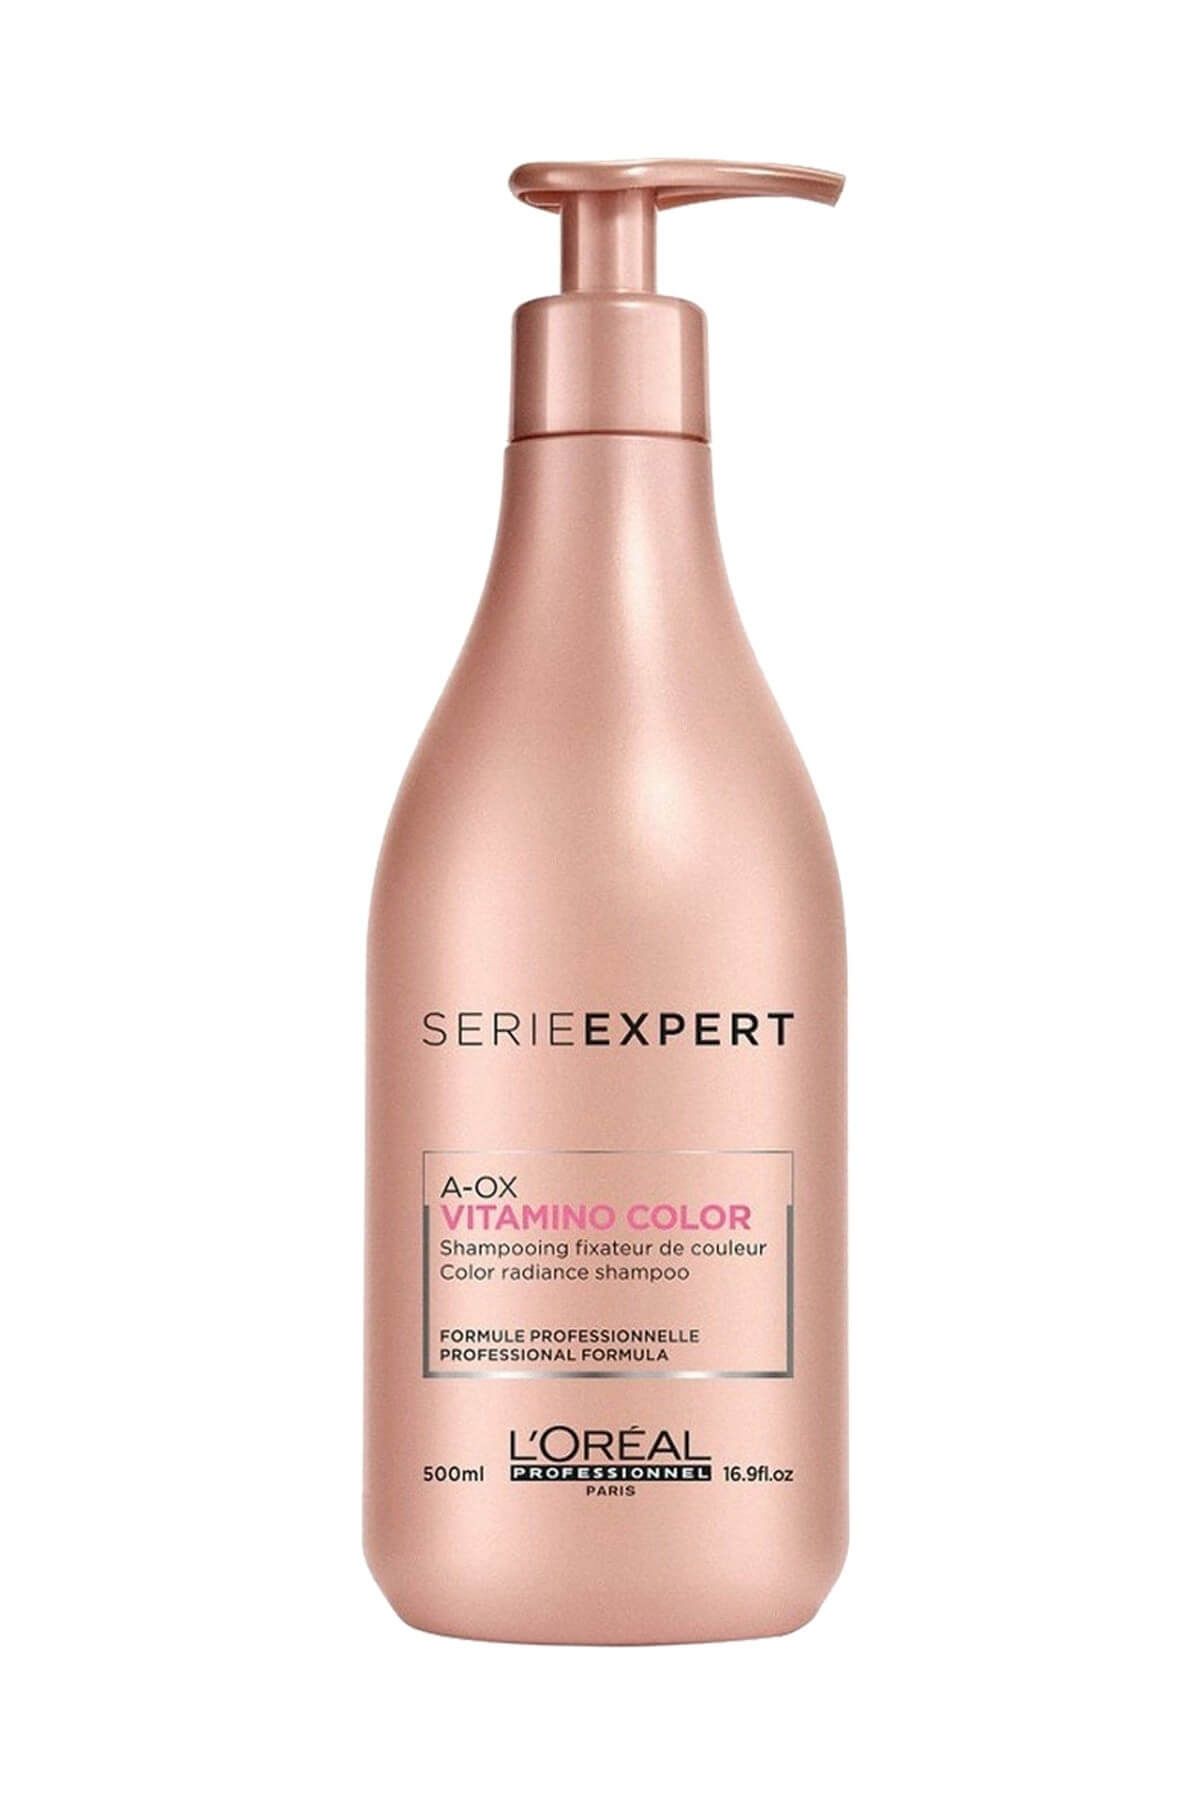 L'oreal Professionnel Yeni A-ox Vitamino Color Boyalı Saçlar için Besleyici ve Onarıcı Şampuan 500 ml